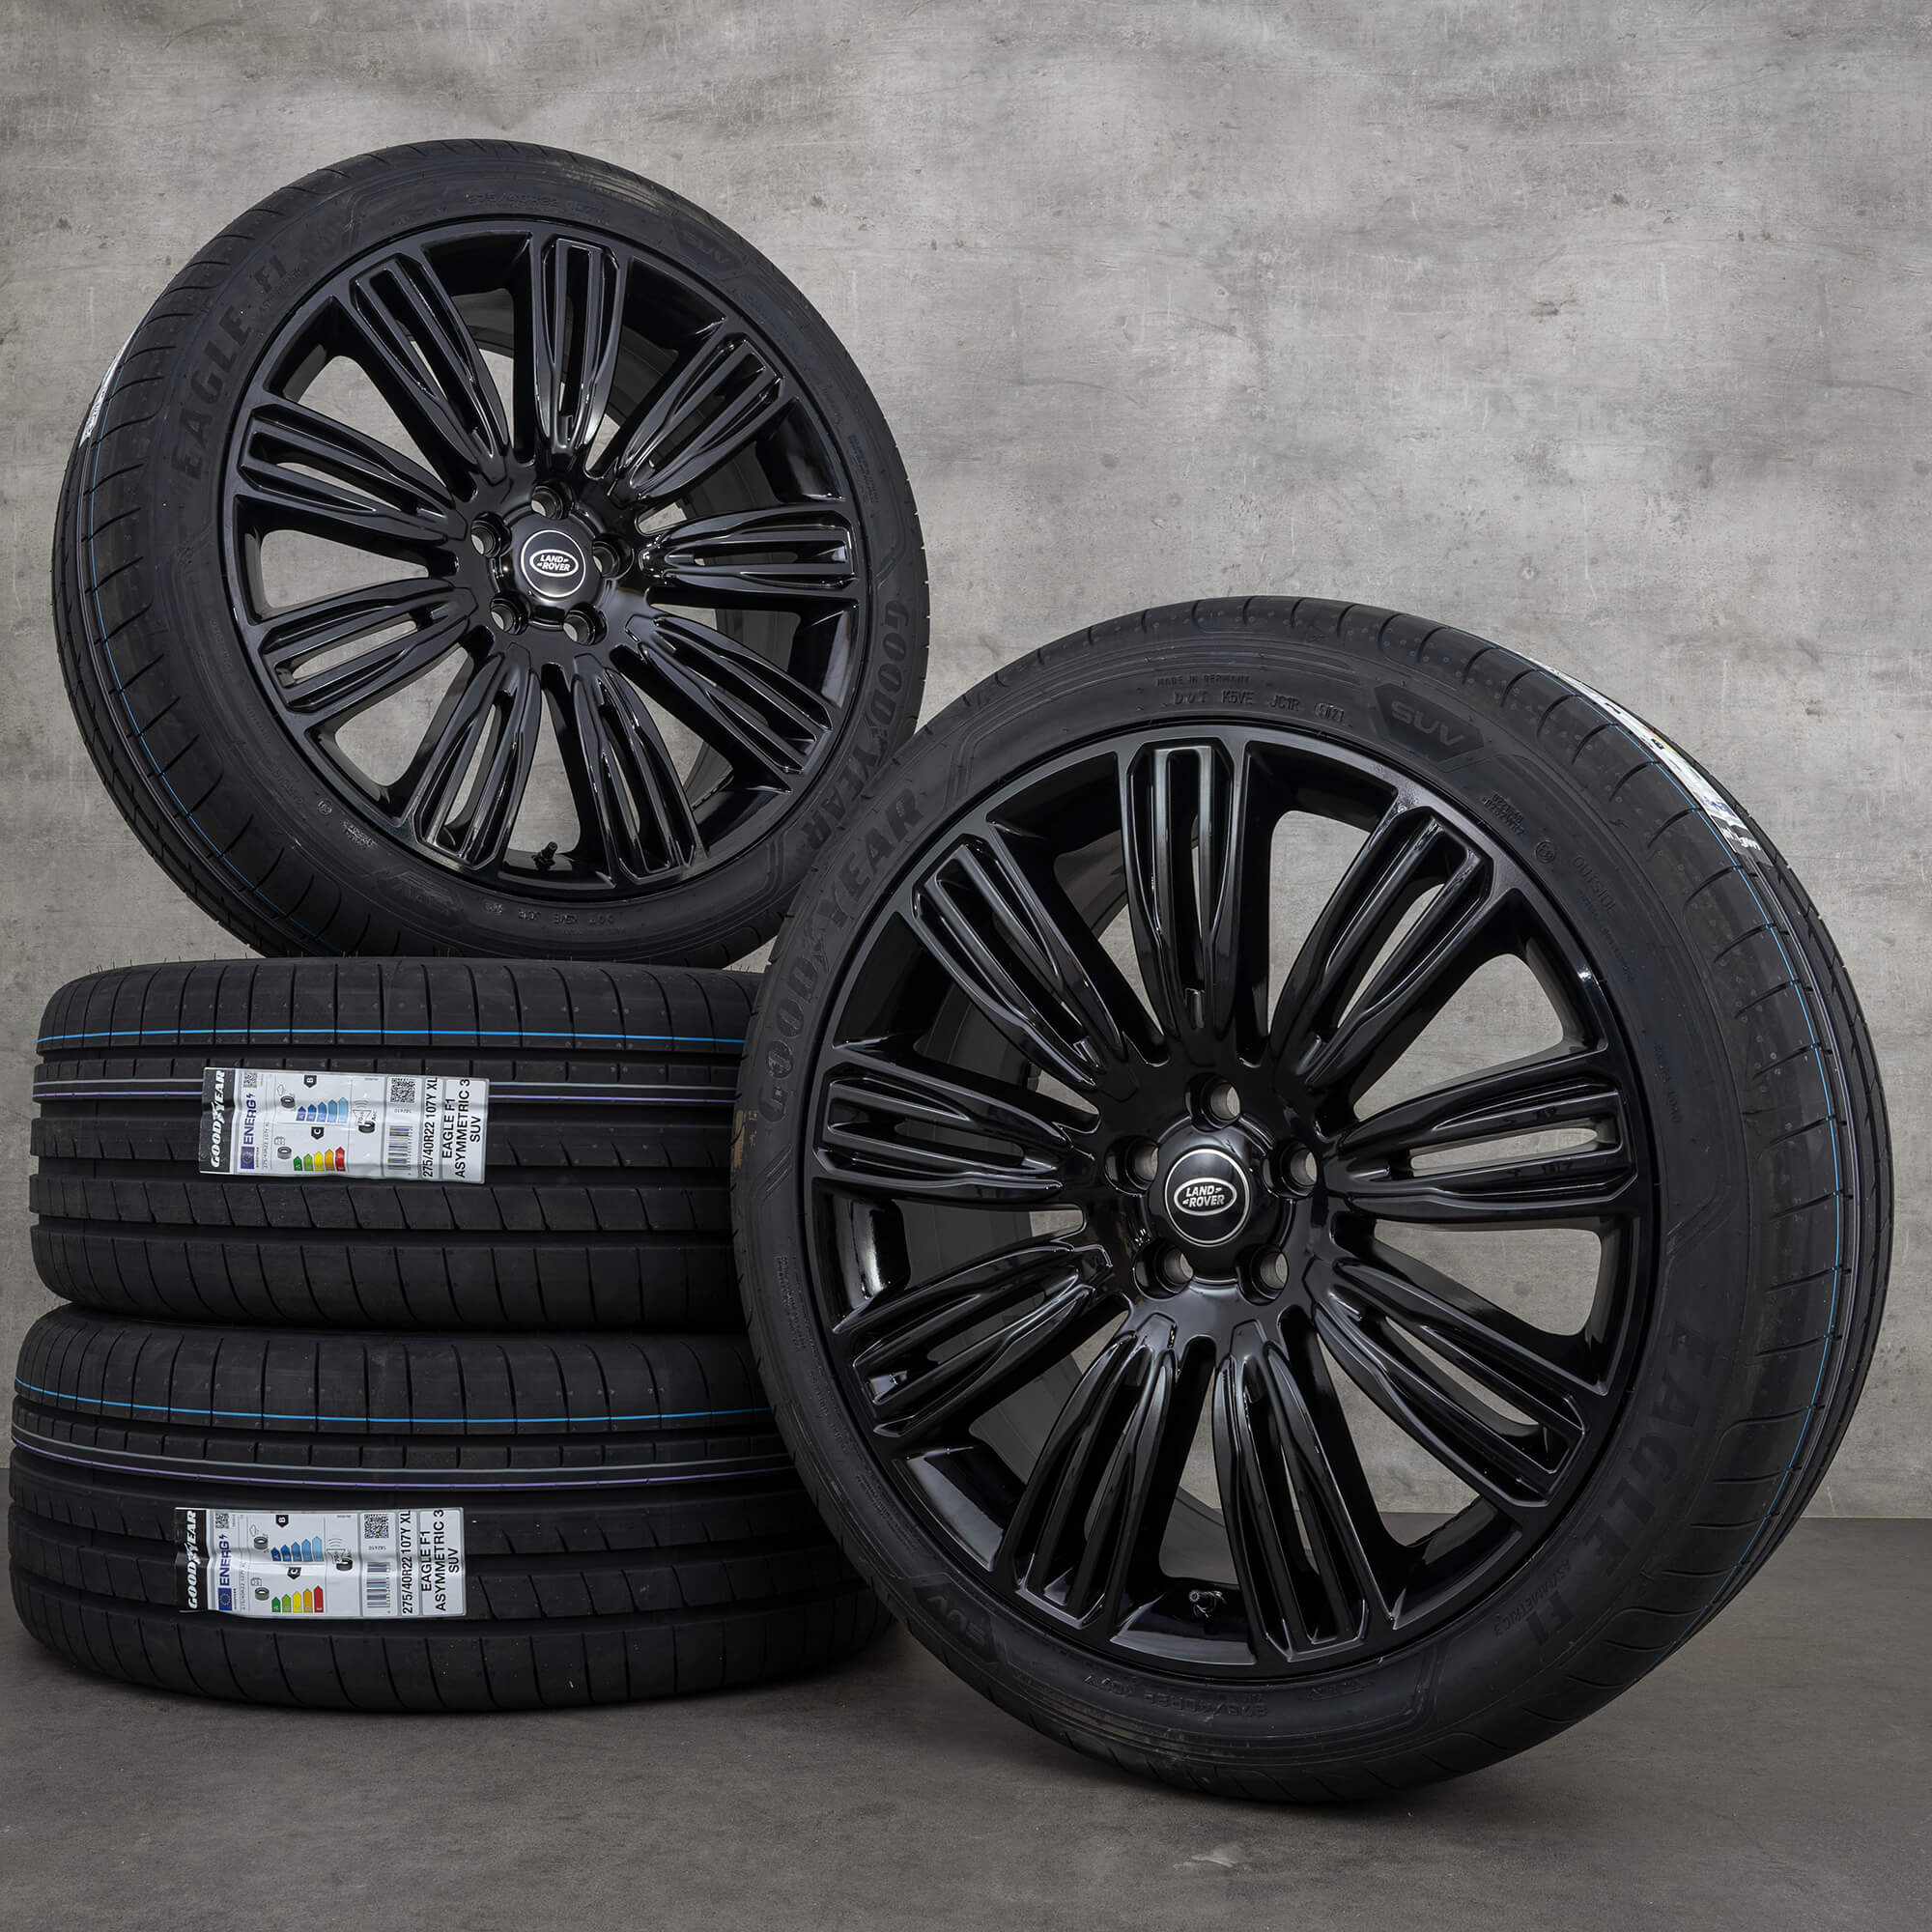 Land Range Rover 22 polegadas jantes 9012 de alumínio pneus verão rodas NOVO